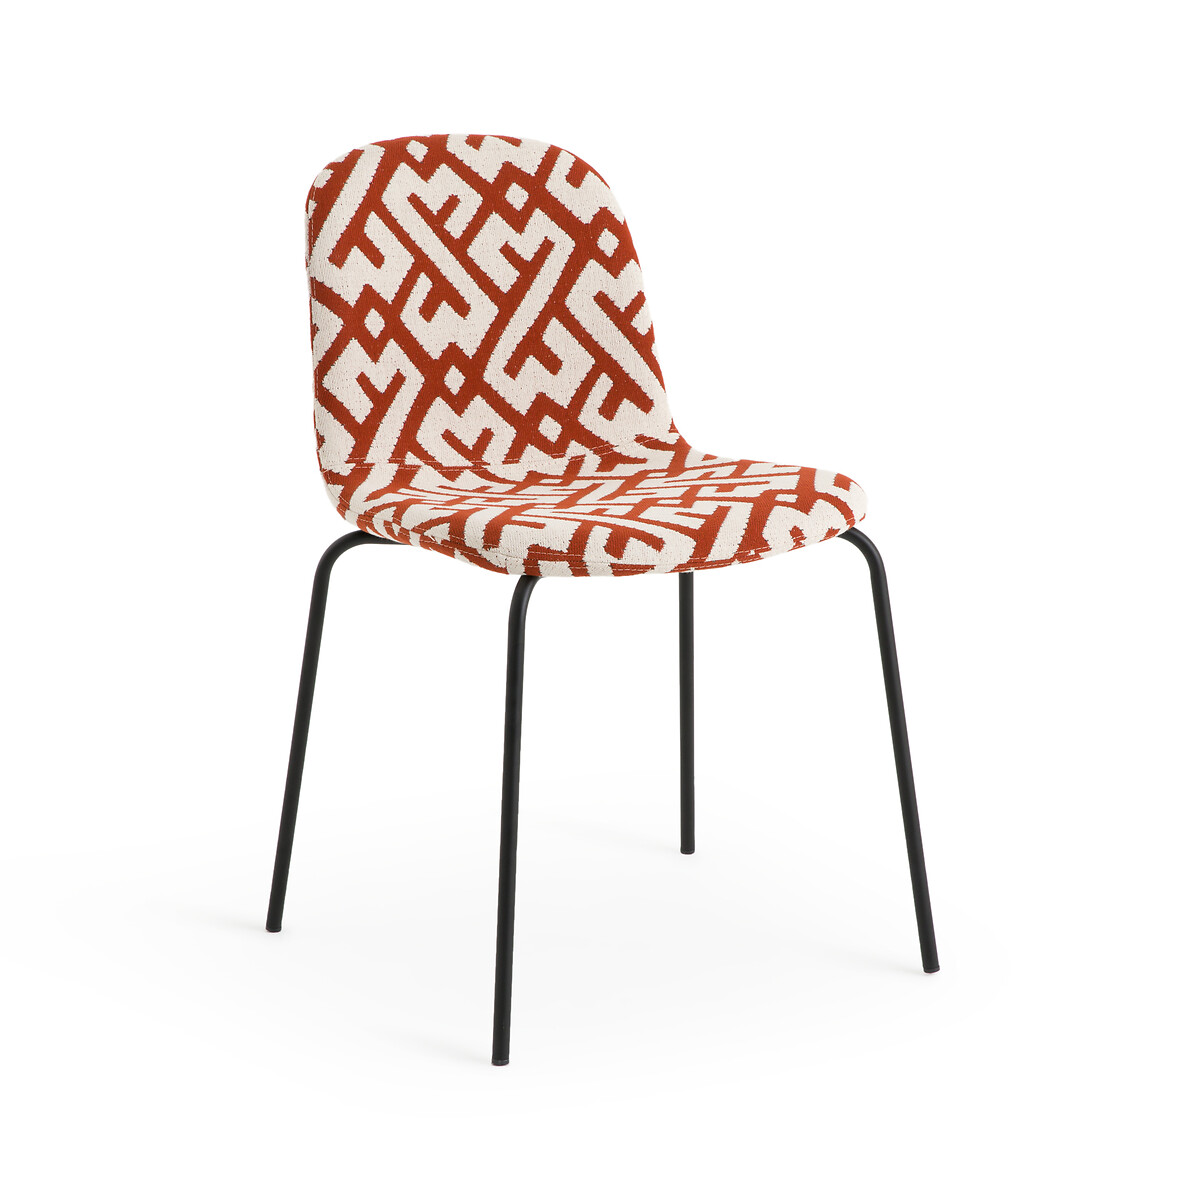 Стул из жаккардовой ткани Tibby единый размер оранжевый стул с фланелевым покрытием tibby единый размер серый